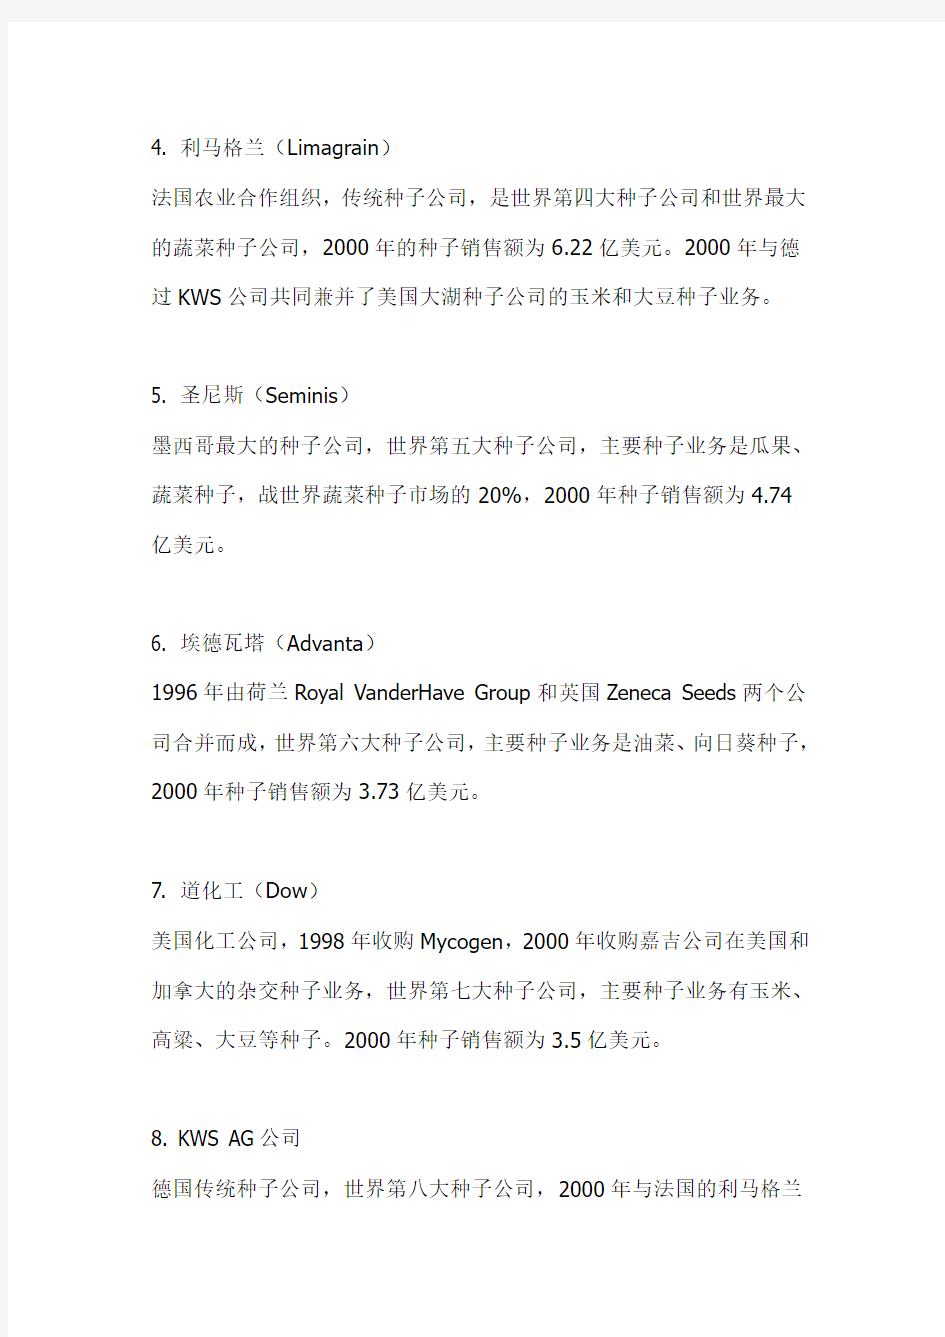 全球十大种业公司排名&中国种业50强